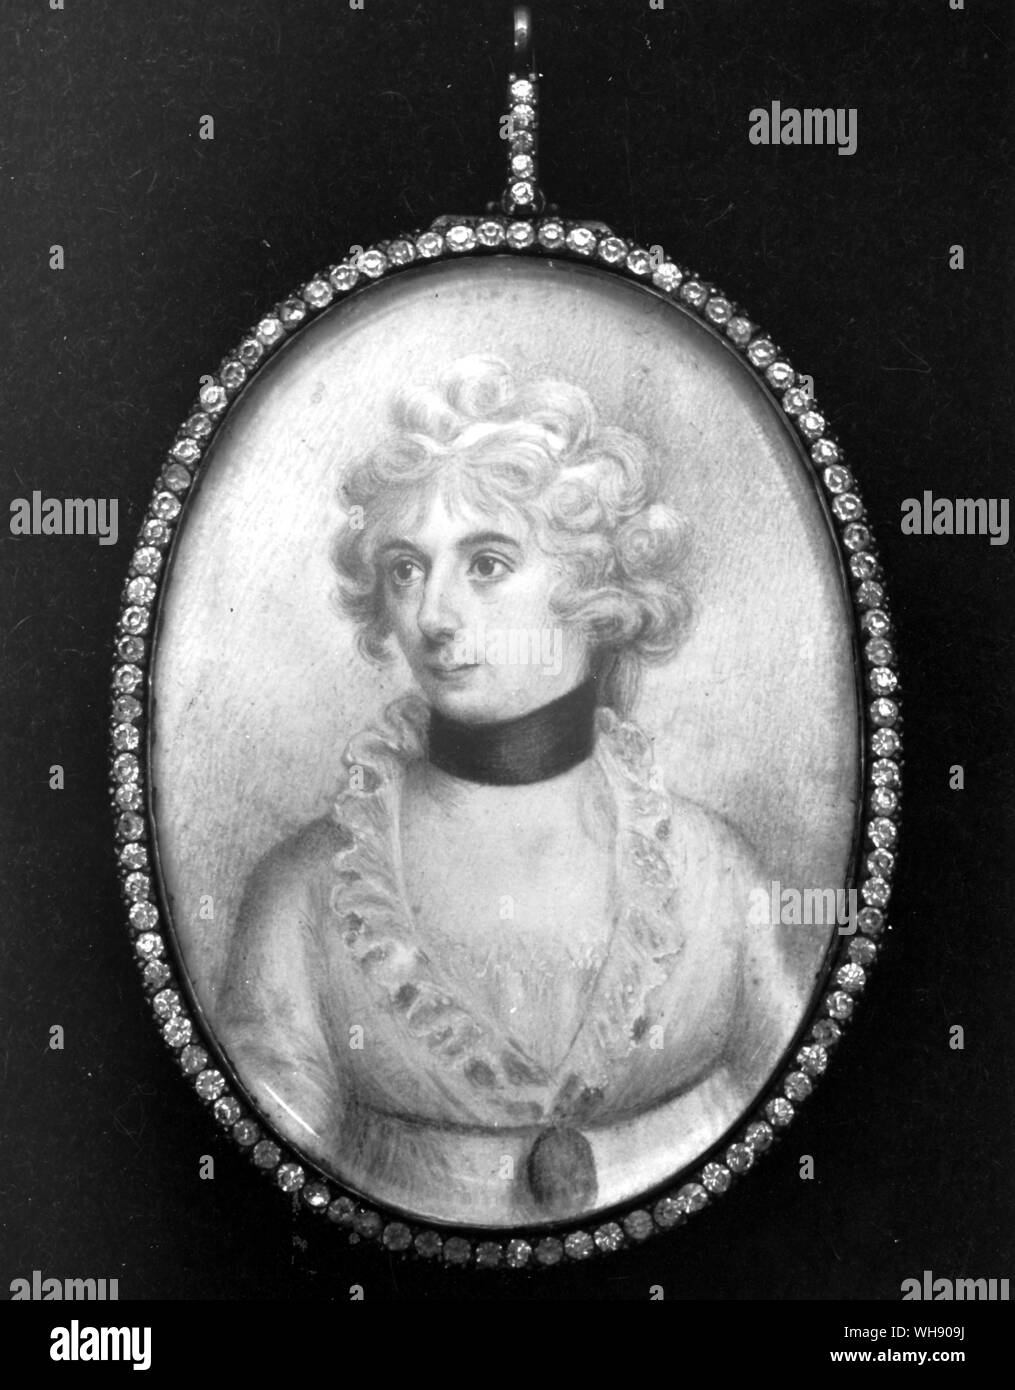 Lord Horatio Nelson's Tochter, Horatia gemalt in über 1815. Sie schien die Horatio verfügt und nicht die von Ihrer Mutter geerbt haben, Emma Hamilton. Horatia nie geglaubt, dass sie ihrer Tochter Emma aus diesem Grund. Stockfoto